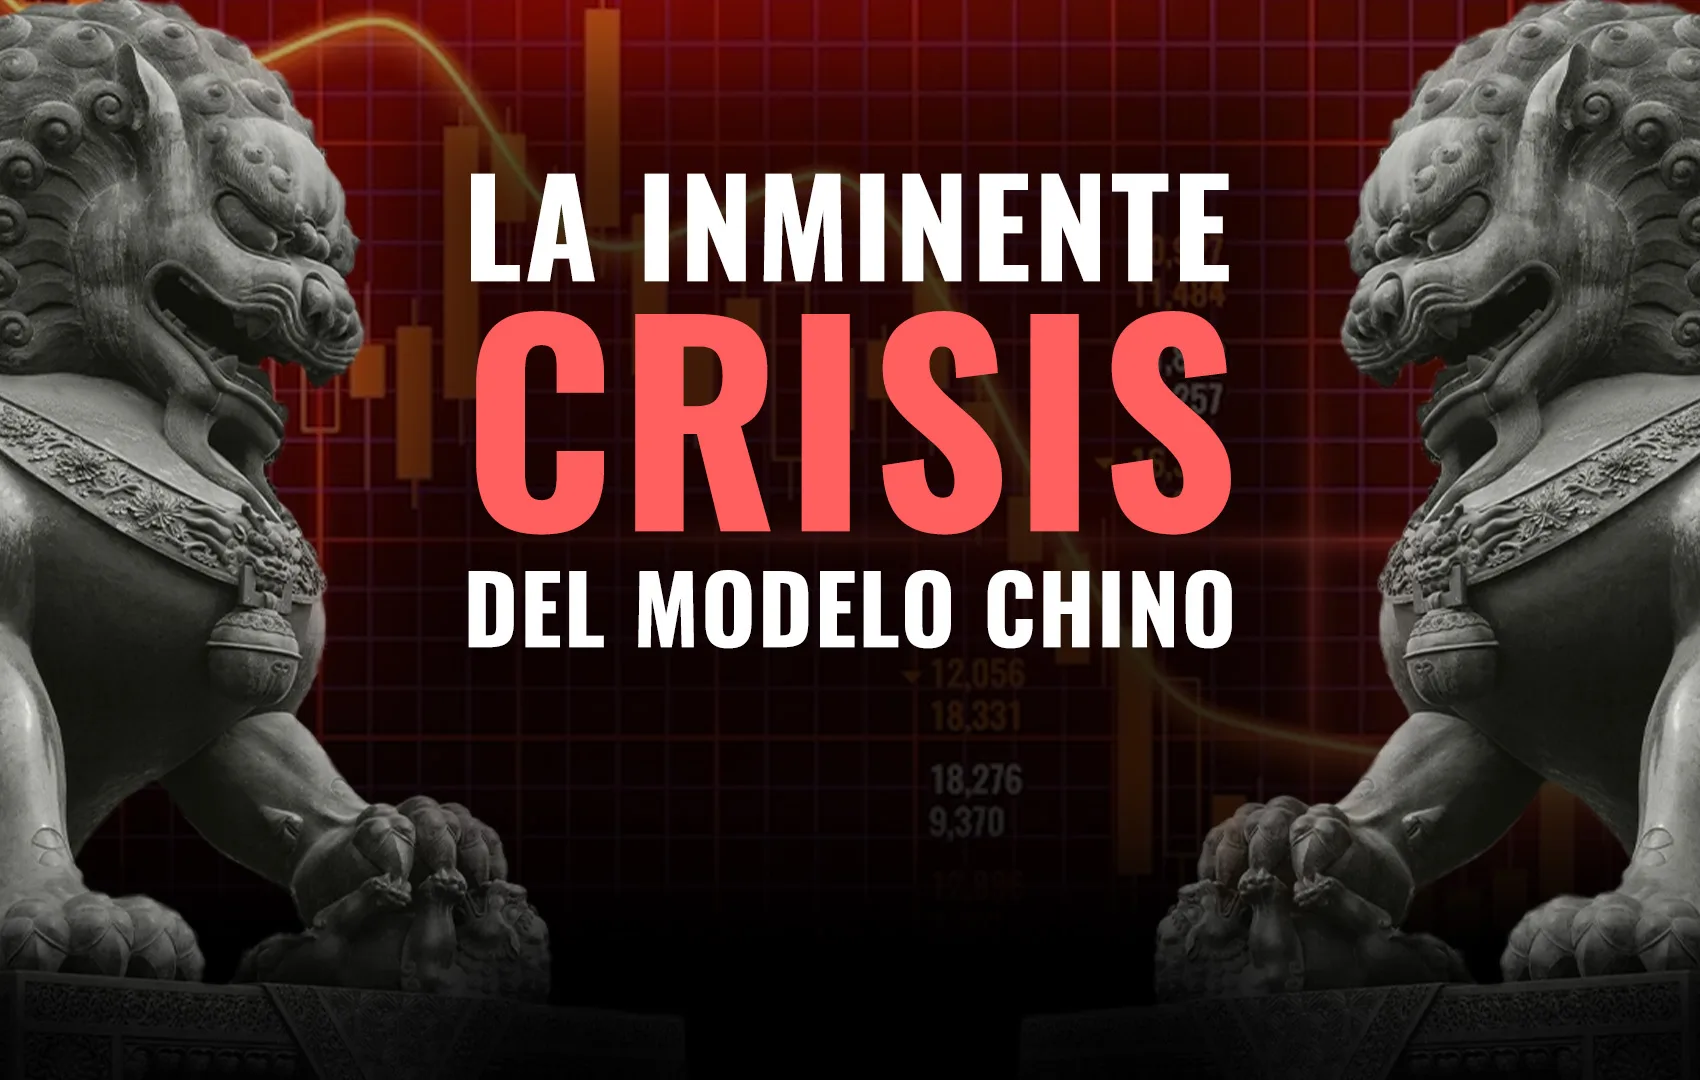 La inminente crisis del modelo chino